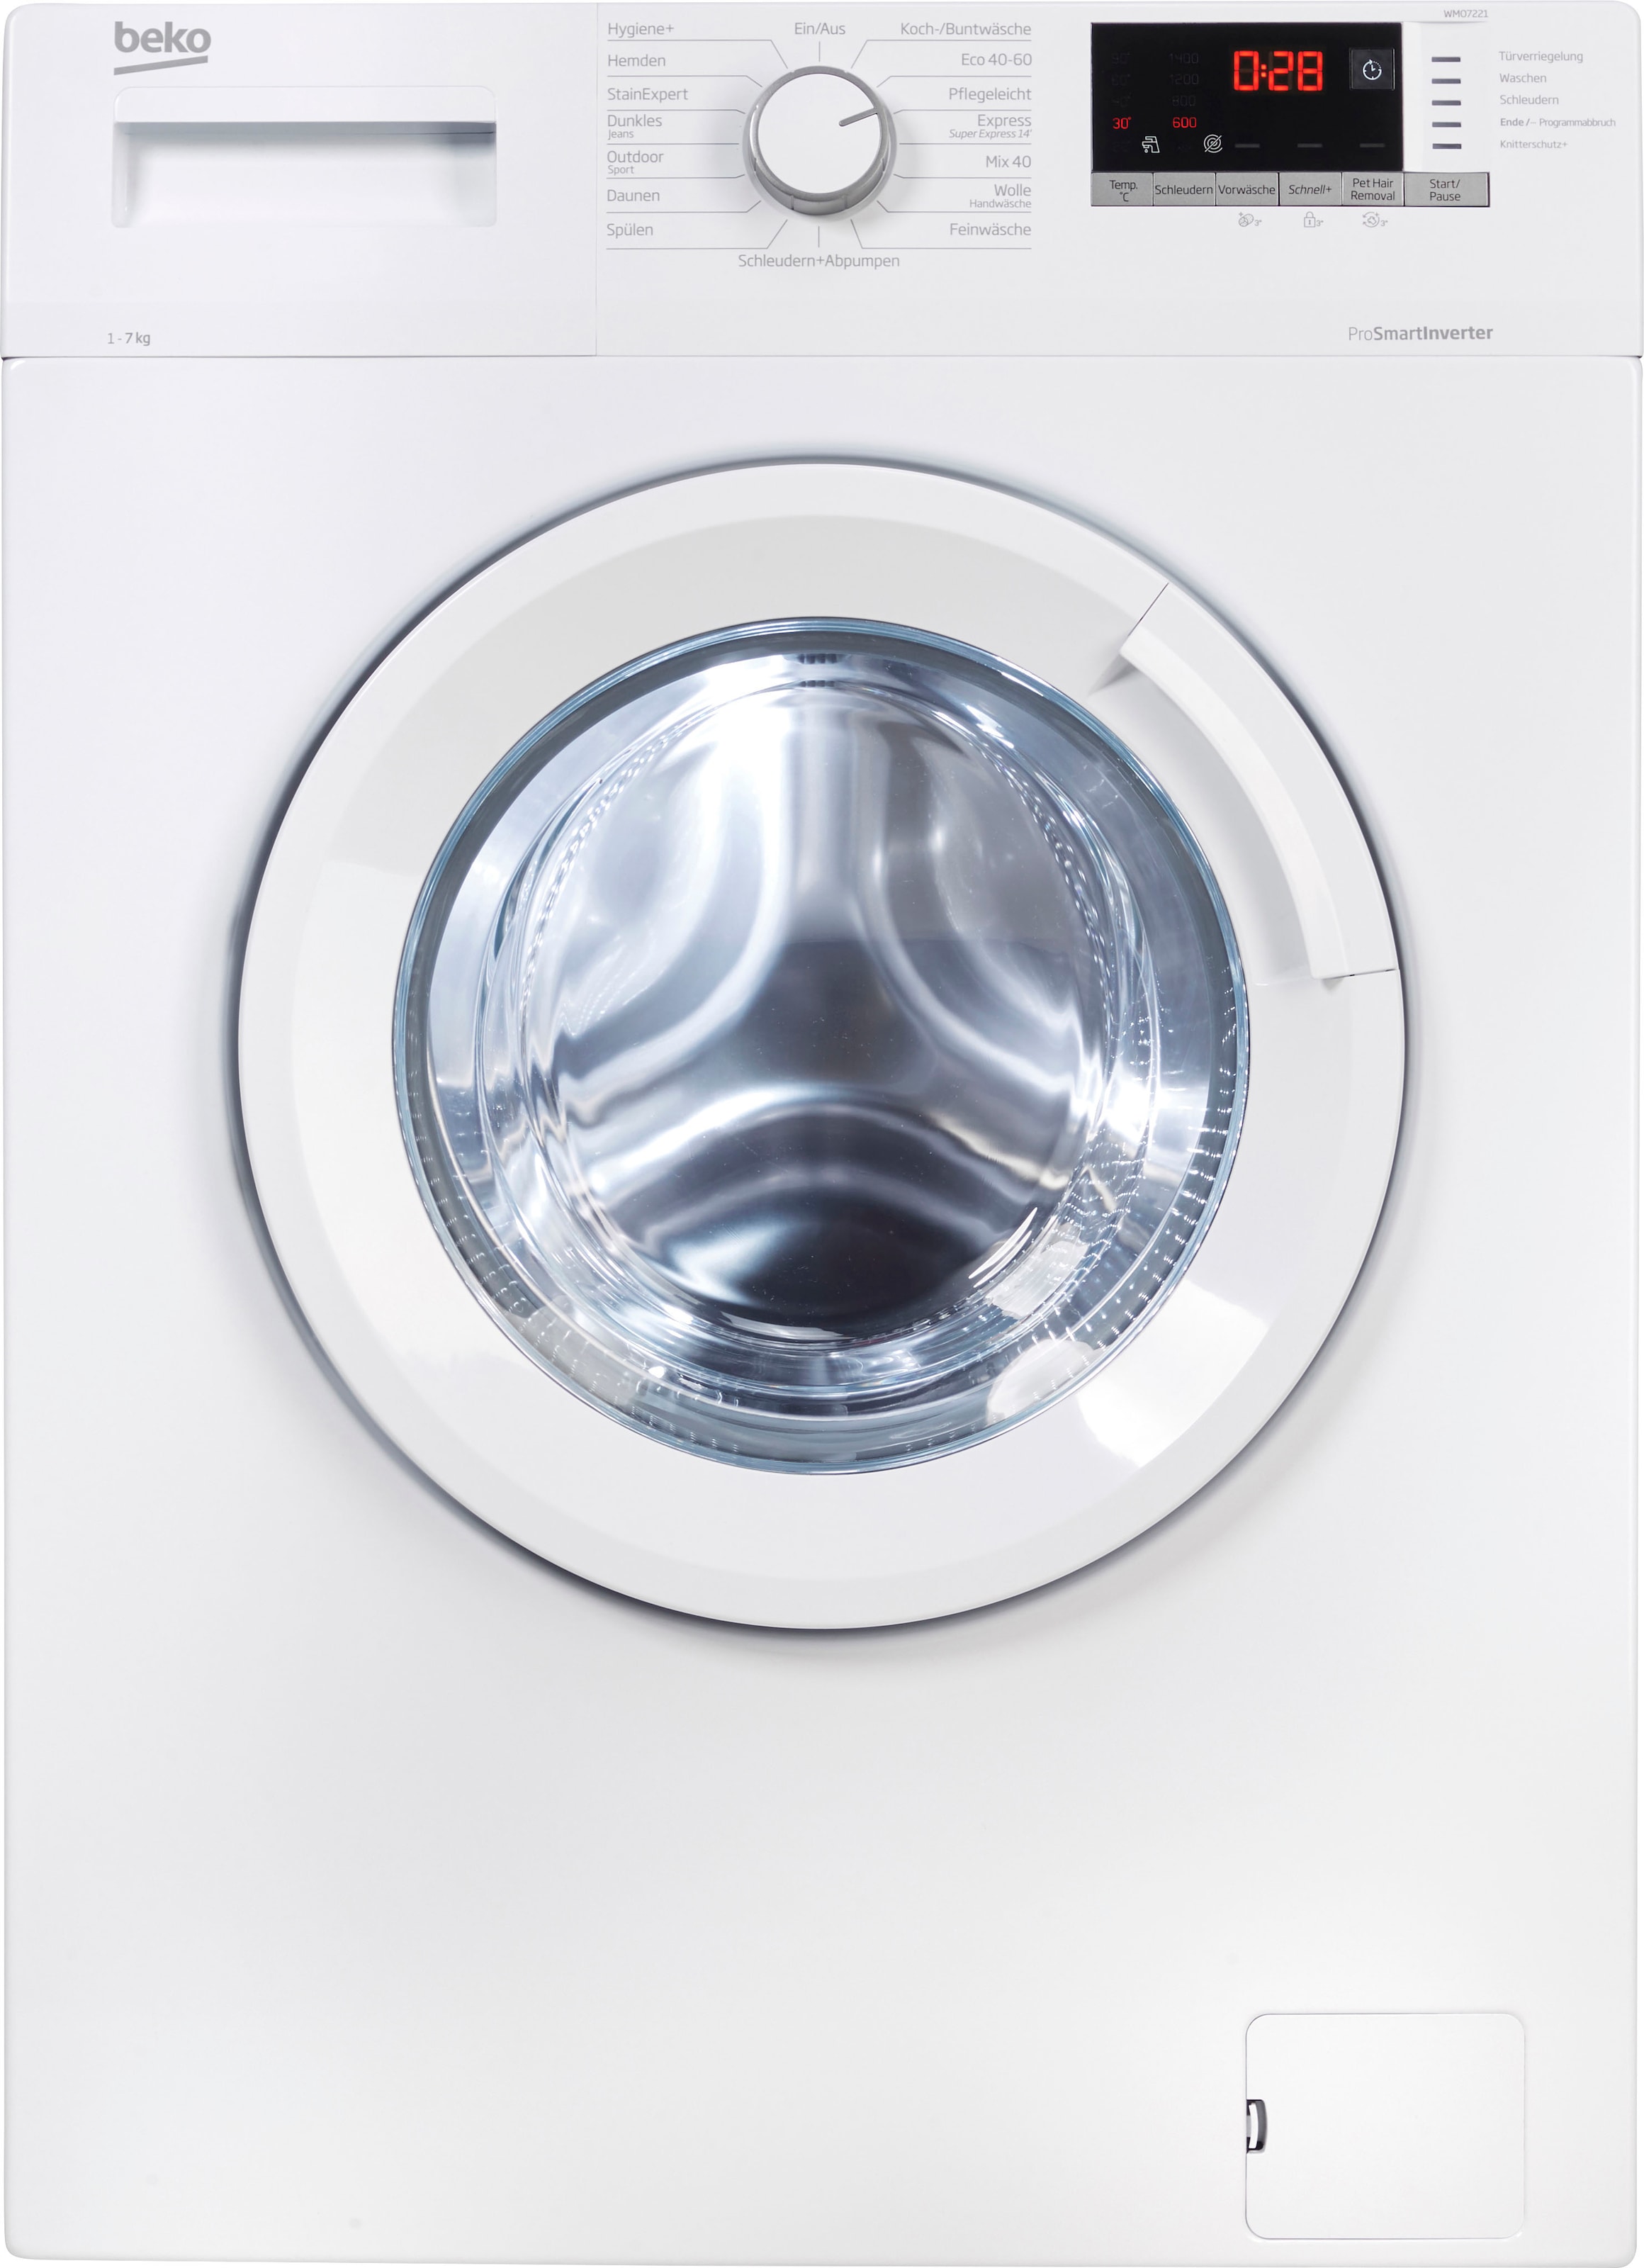 BEKO Waschmaschine 1400 3 WMO7221, XXL U/min Garantie »WMO7221«, kg, mit 7 Jahren